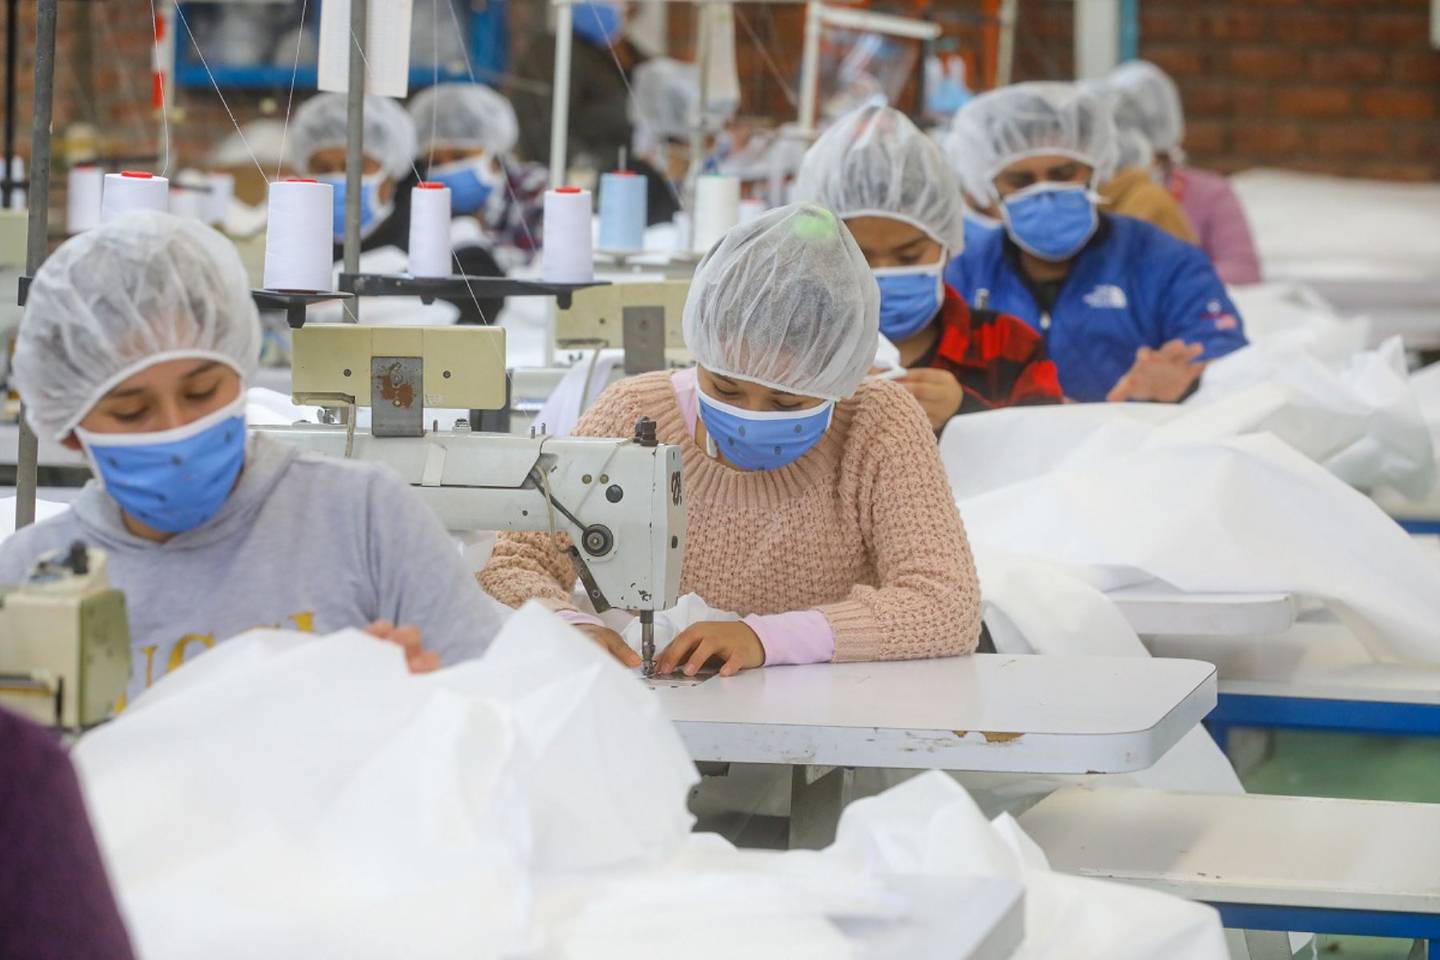 Industria textil local pide que se apliquen salvaguardias a importaciones sobre todo de naciones asiáticas como China.dfd